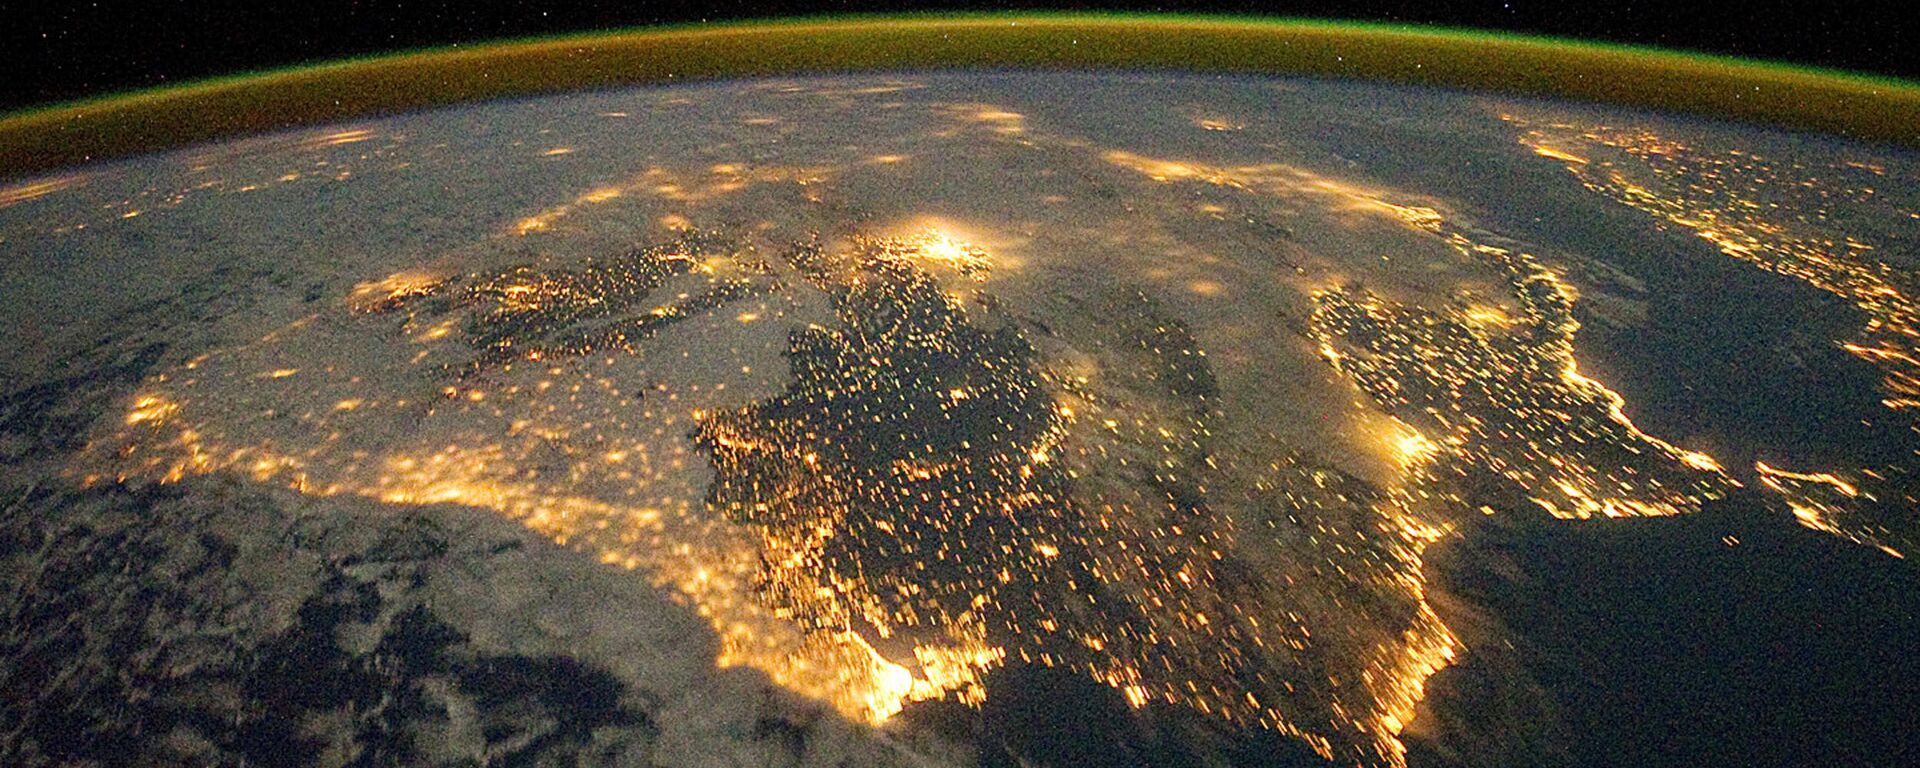 Фотография астронавта, опубликованная Земной обсерваторией НАСА 26 декабря 2011 года - Sputnik Абхазия, 1920, 18.03.2022